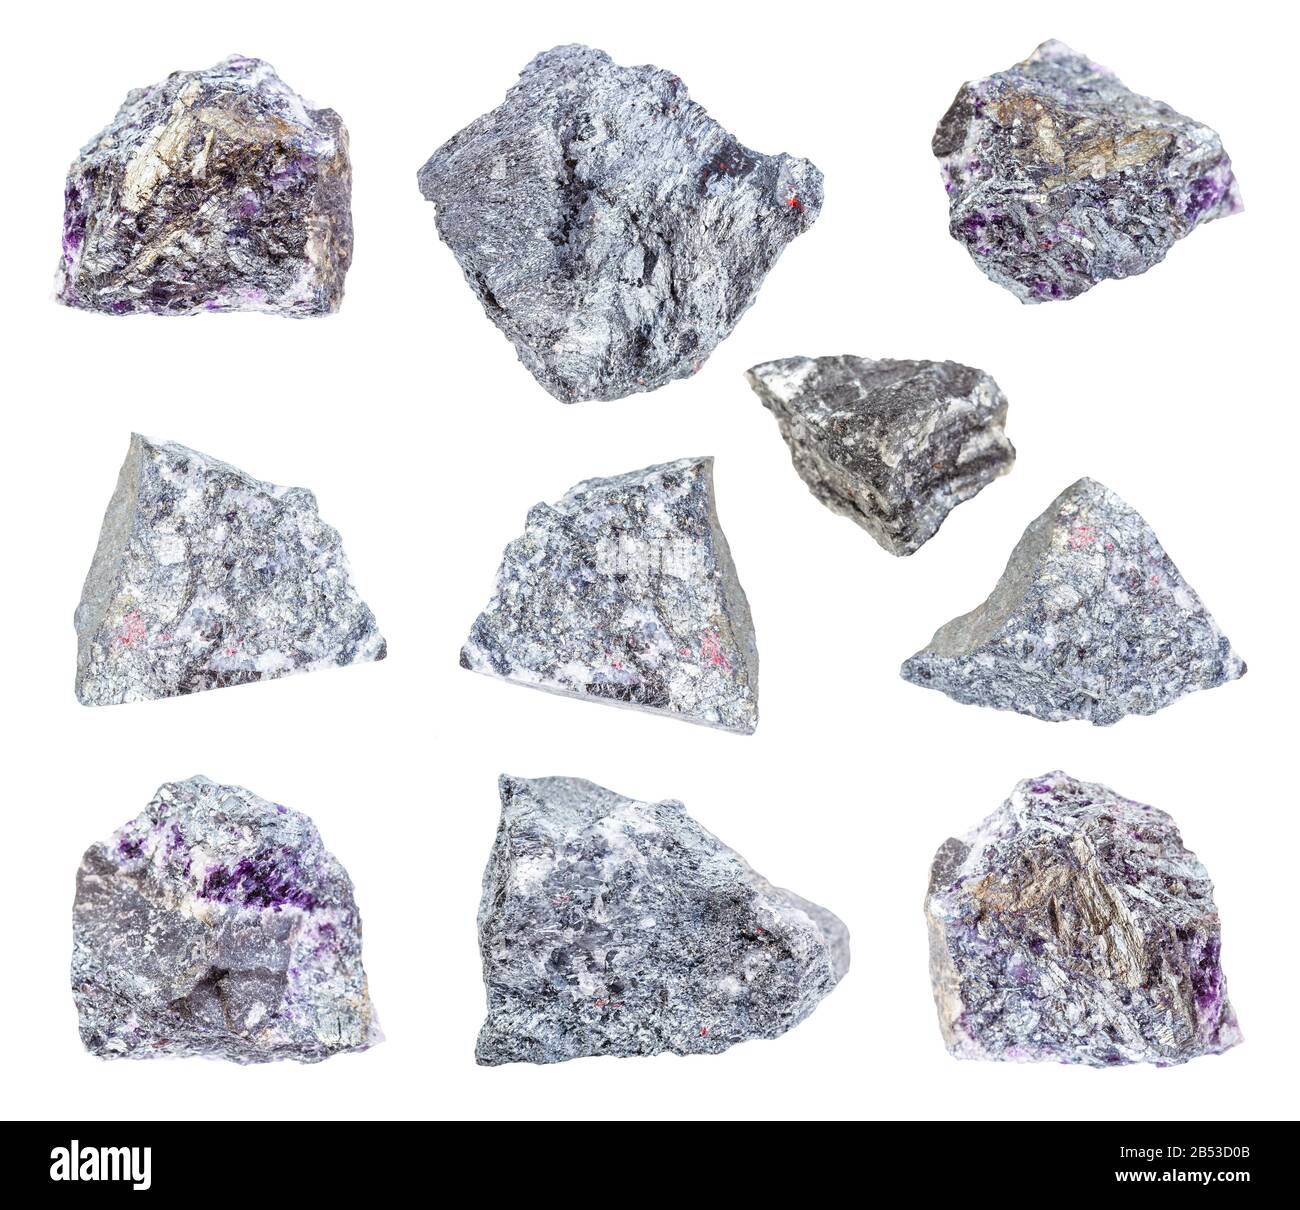 Ensemble de diverses roches De Stibnite (antimonite) isolées sur fond blanc Banque D'Images